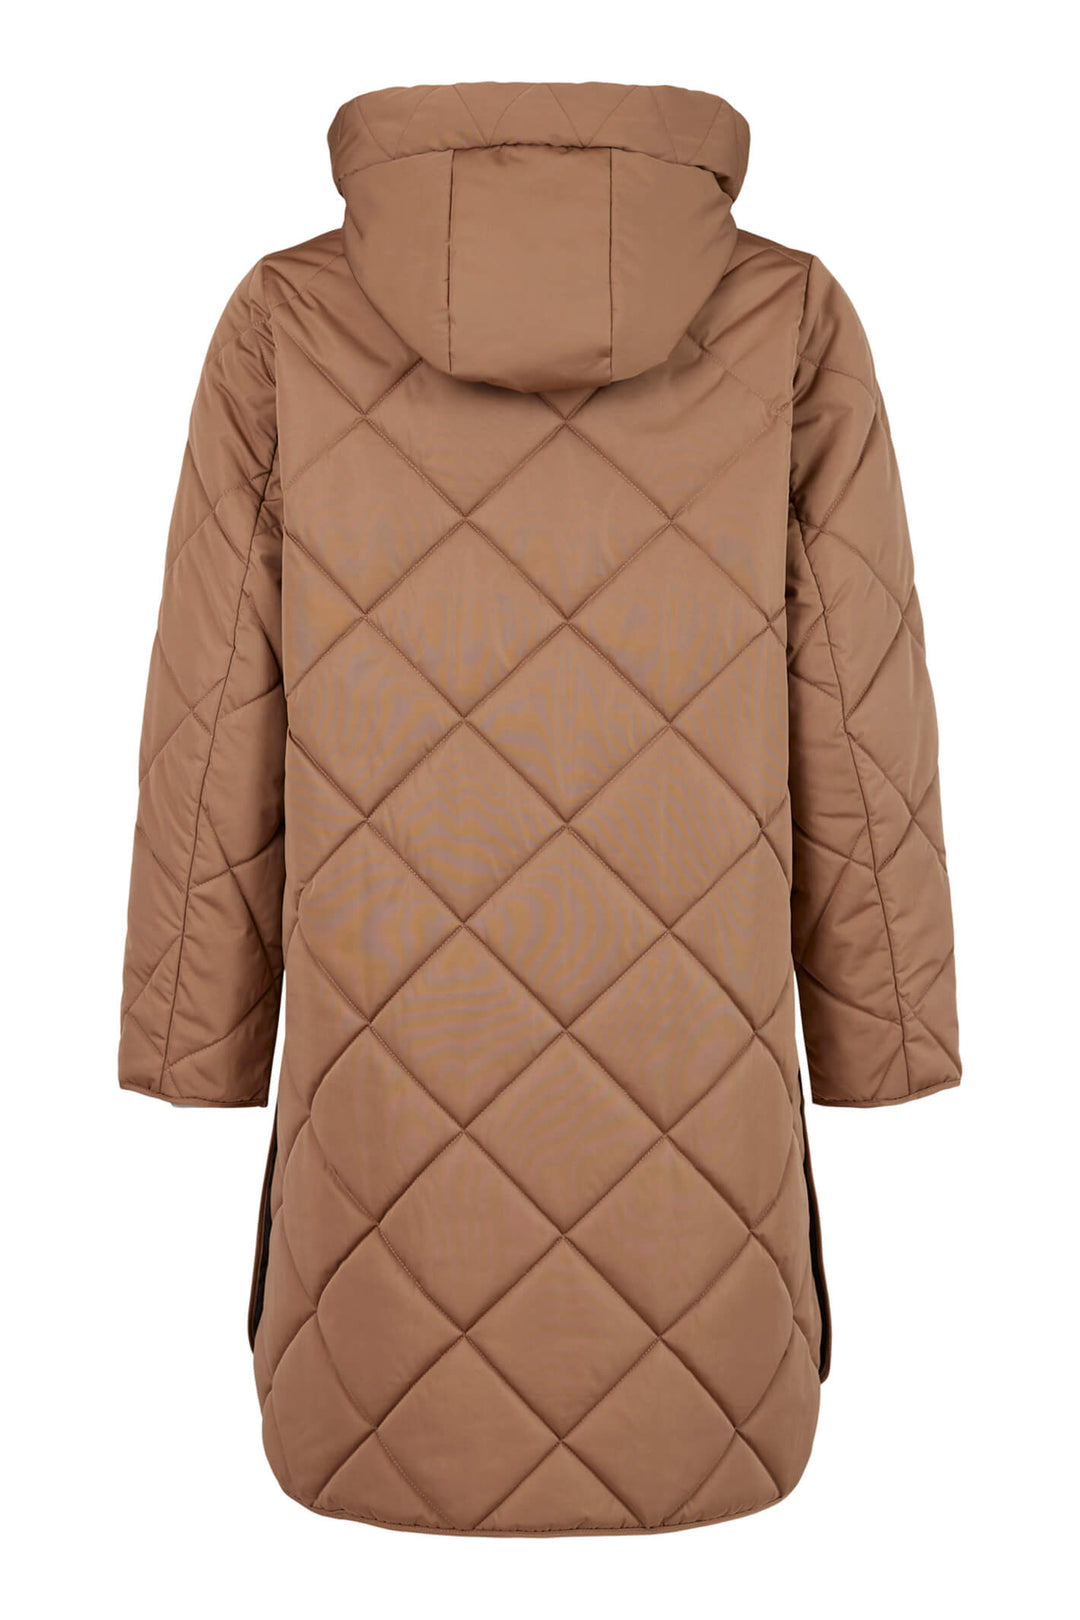 Frandsen 713-357-16 Light Brown Diamond Padded Hooded Coat - Olivia Grace Fashion